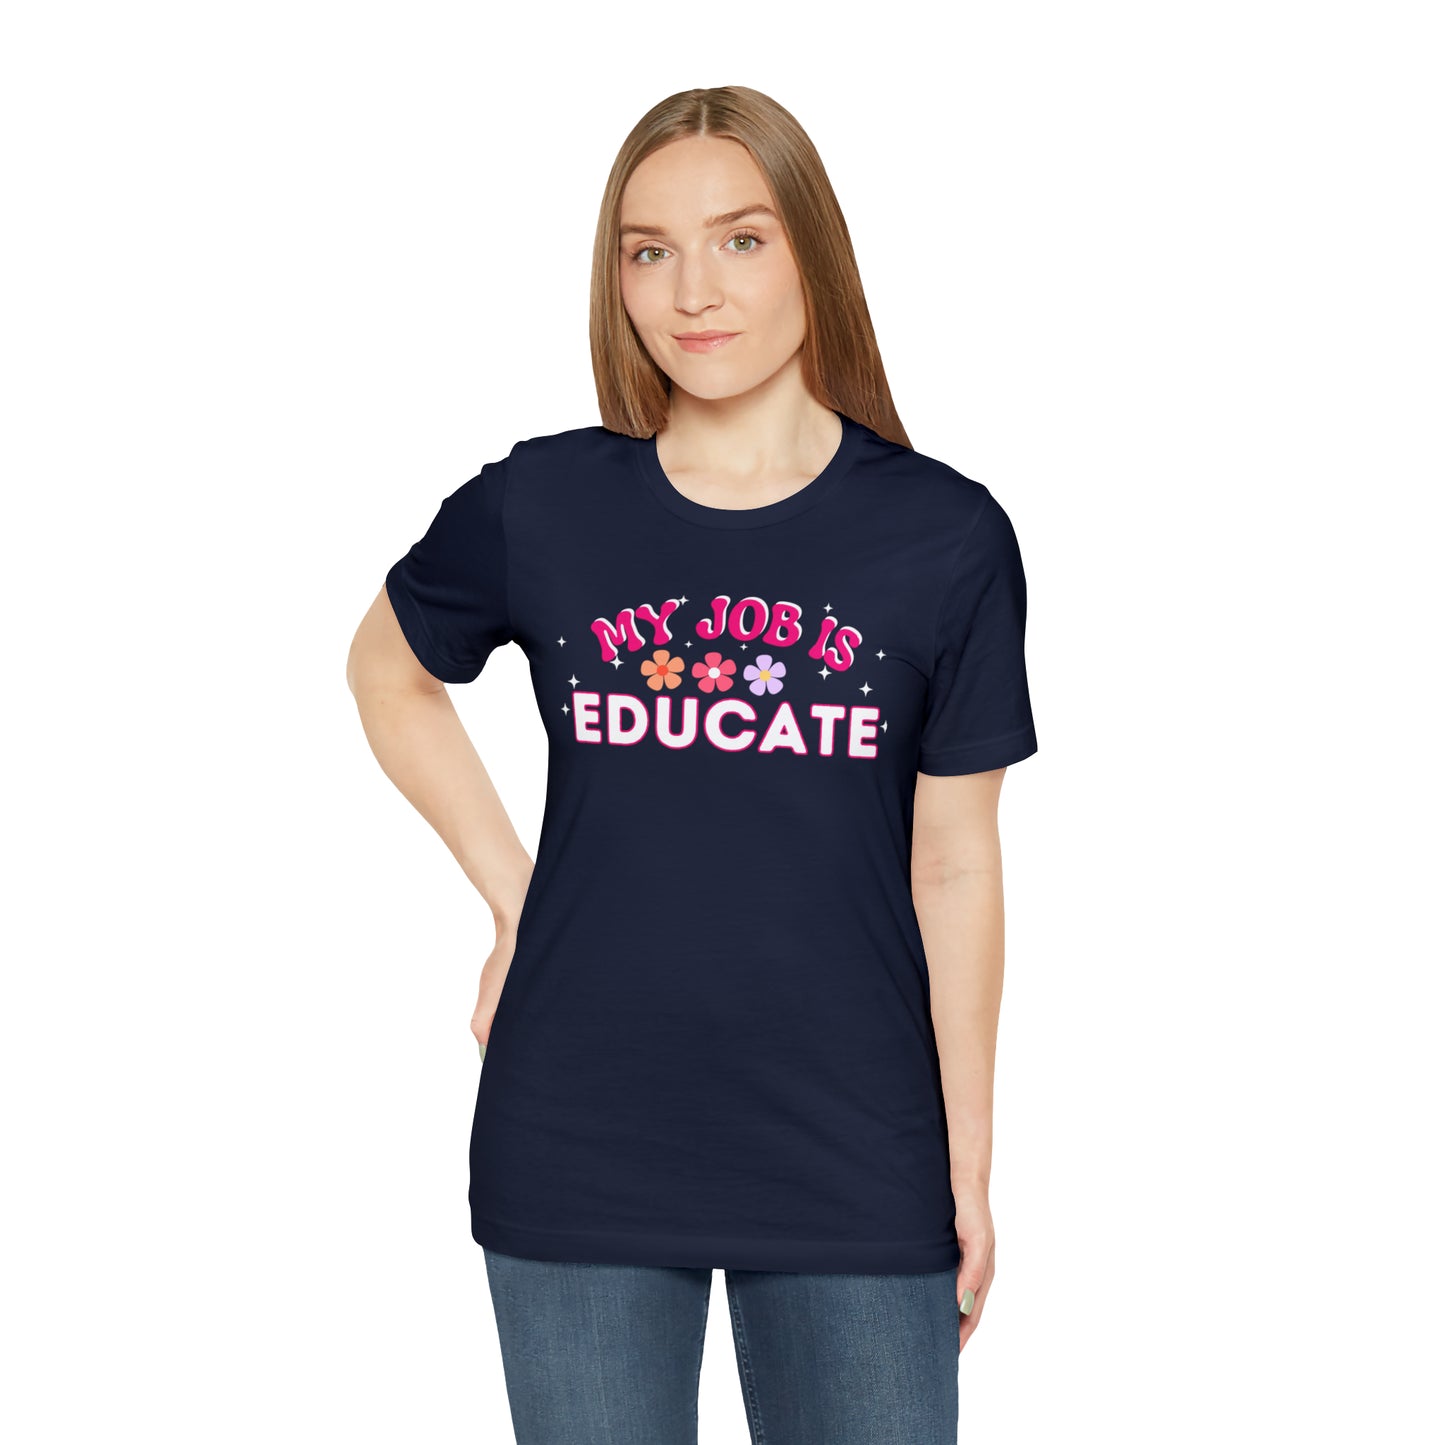 My Job is Educate Shirt Teacher Shirt, Mentor Collage Professor Shirt, Elementary School Teacher Gift Shirt High School Teacher Shirt Pre-K Preschool Kindergarten